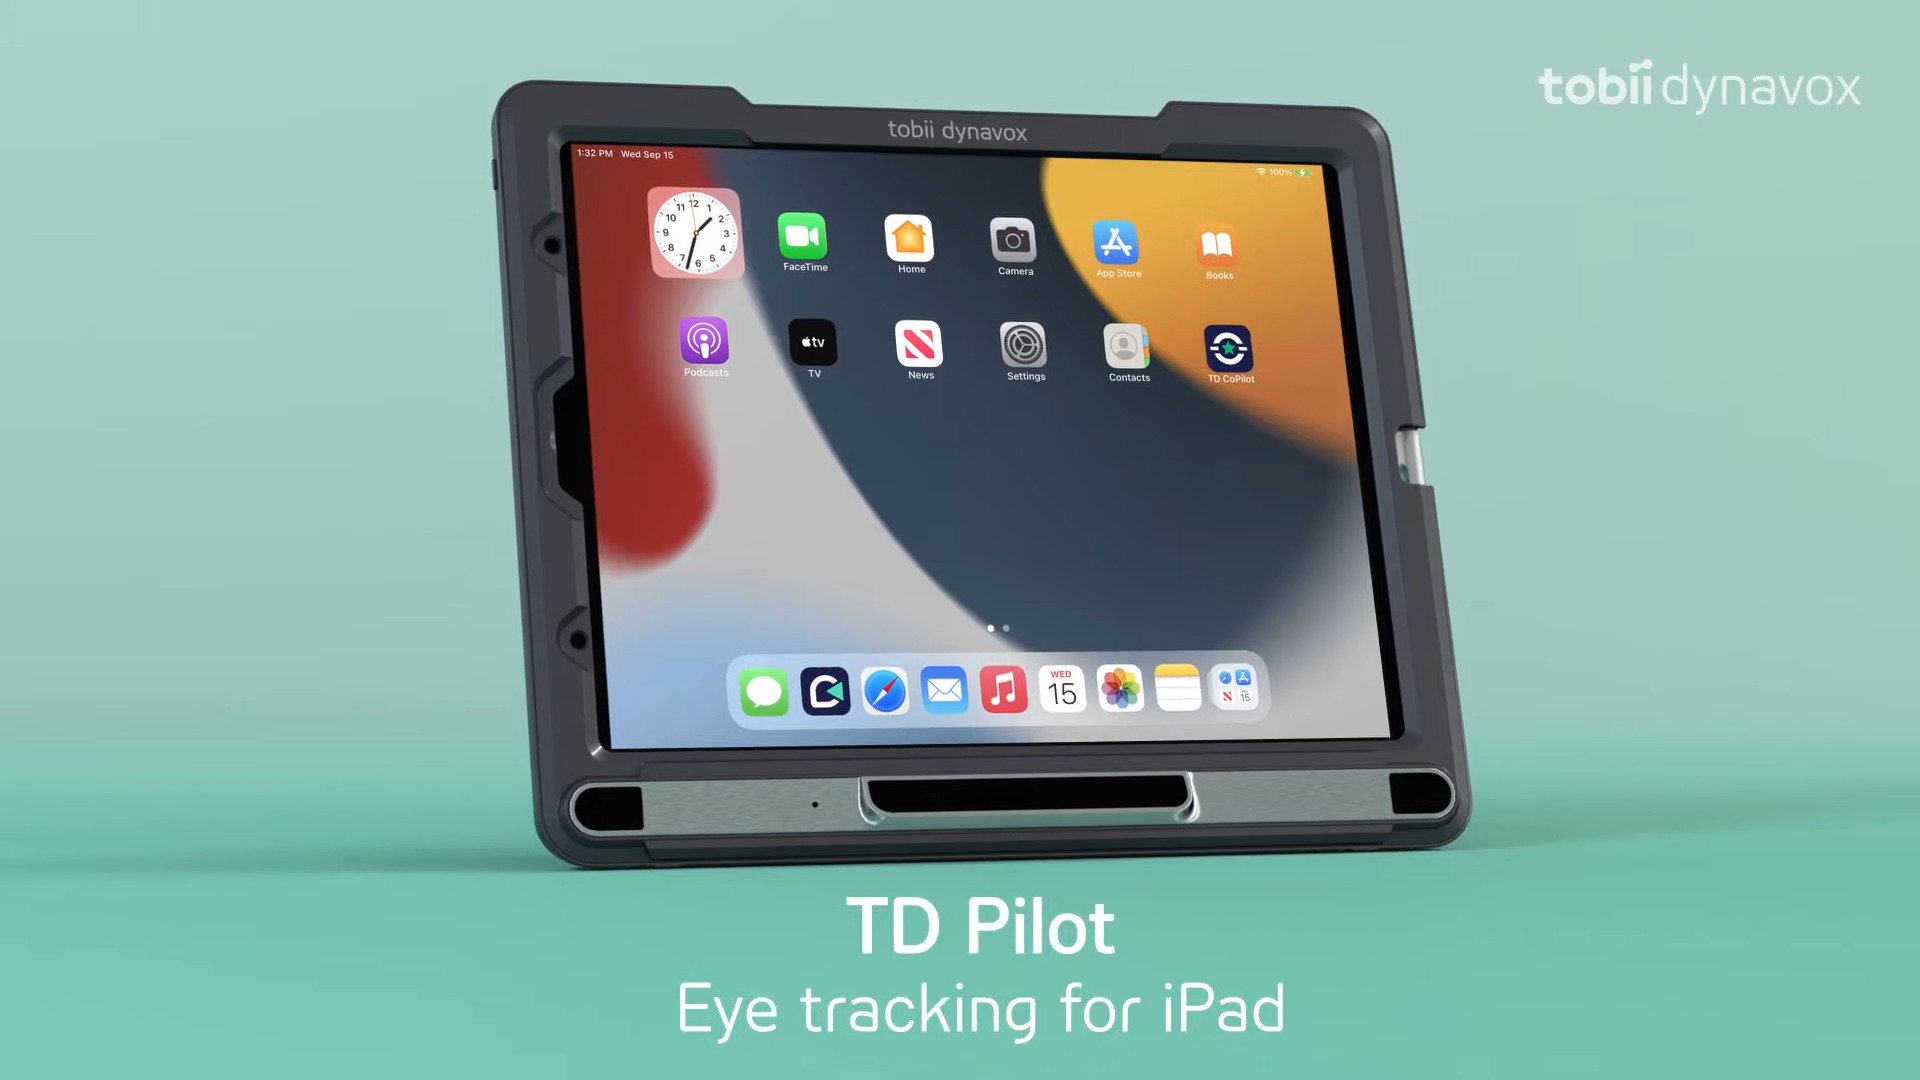 TD Pilot อุปกรณ์ช่วยคนพิการสำหรับ iPad